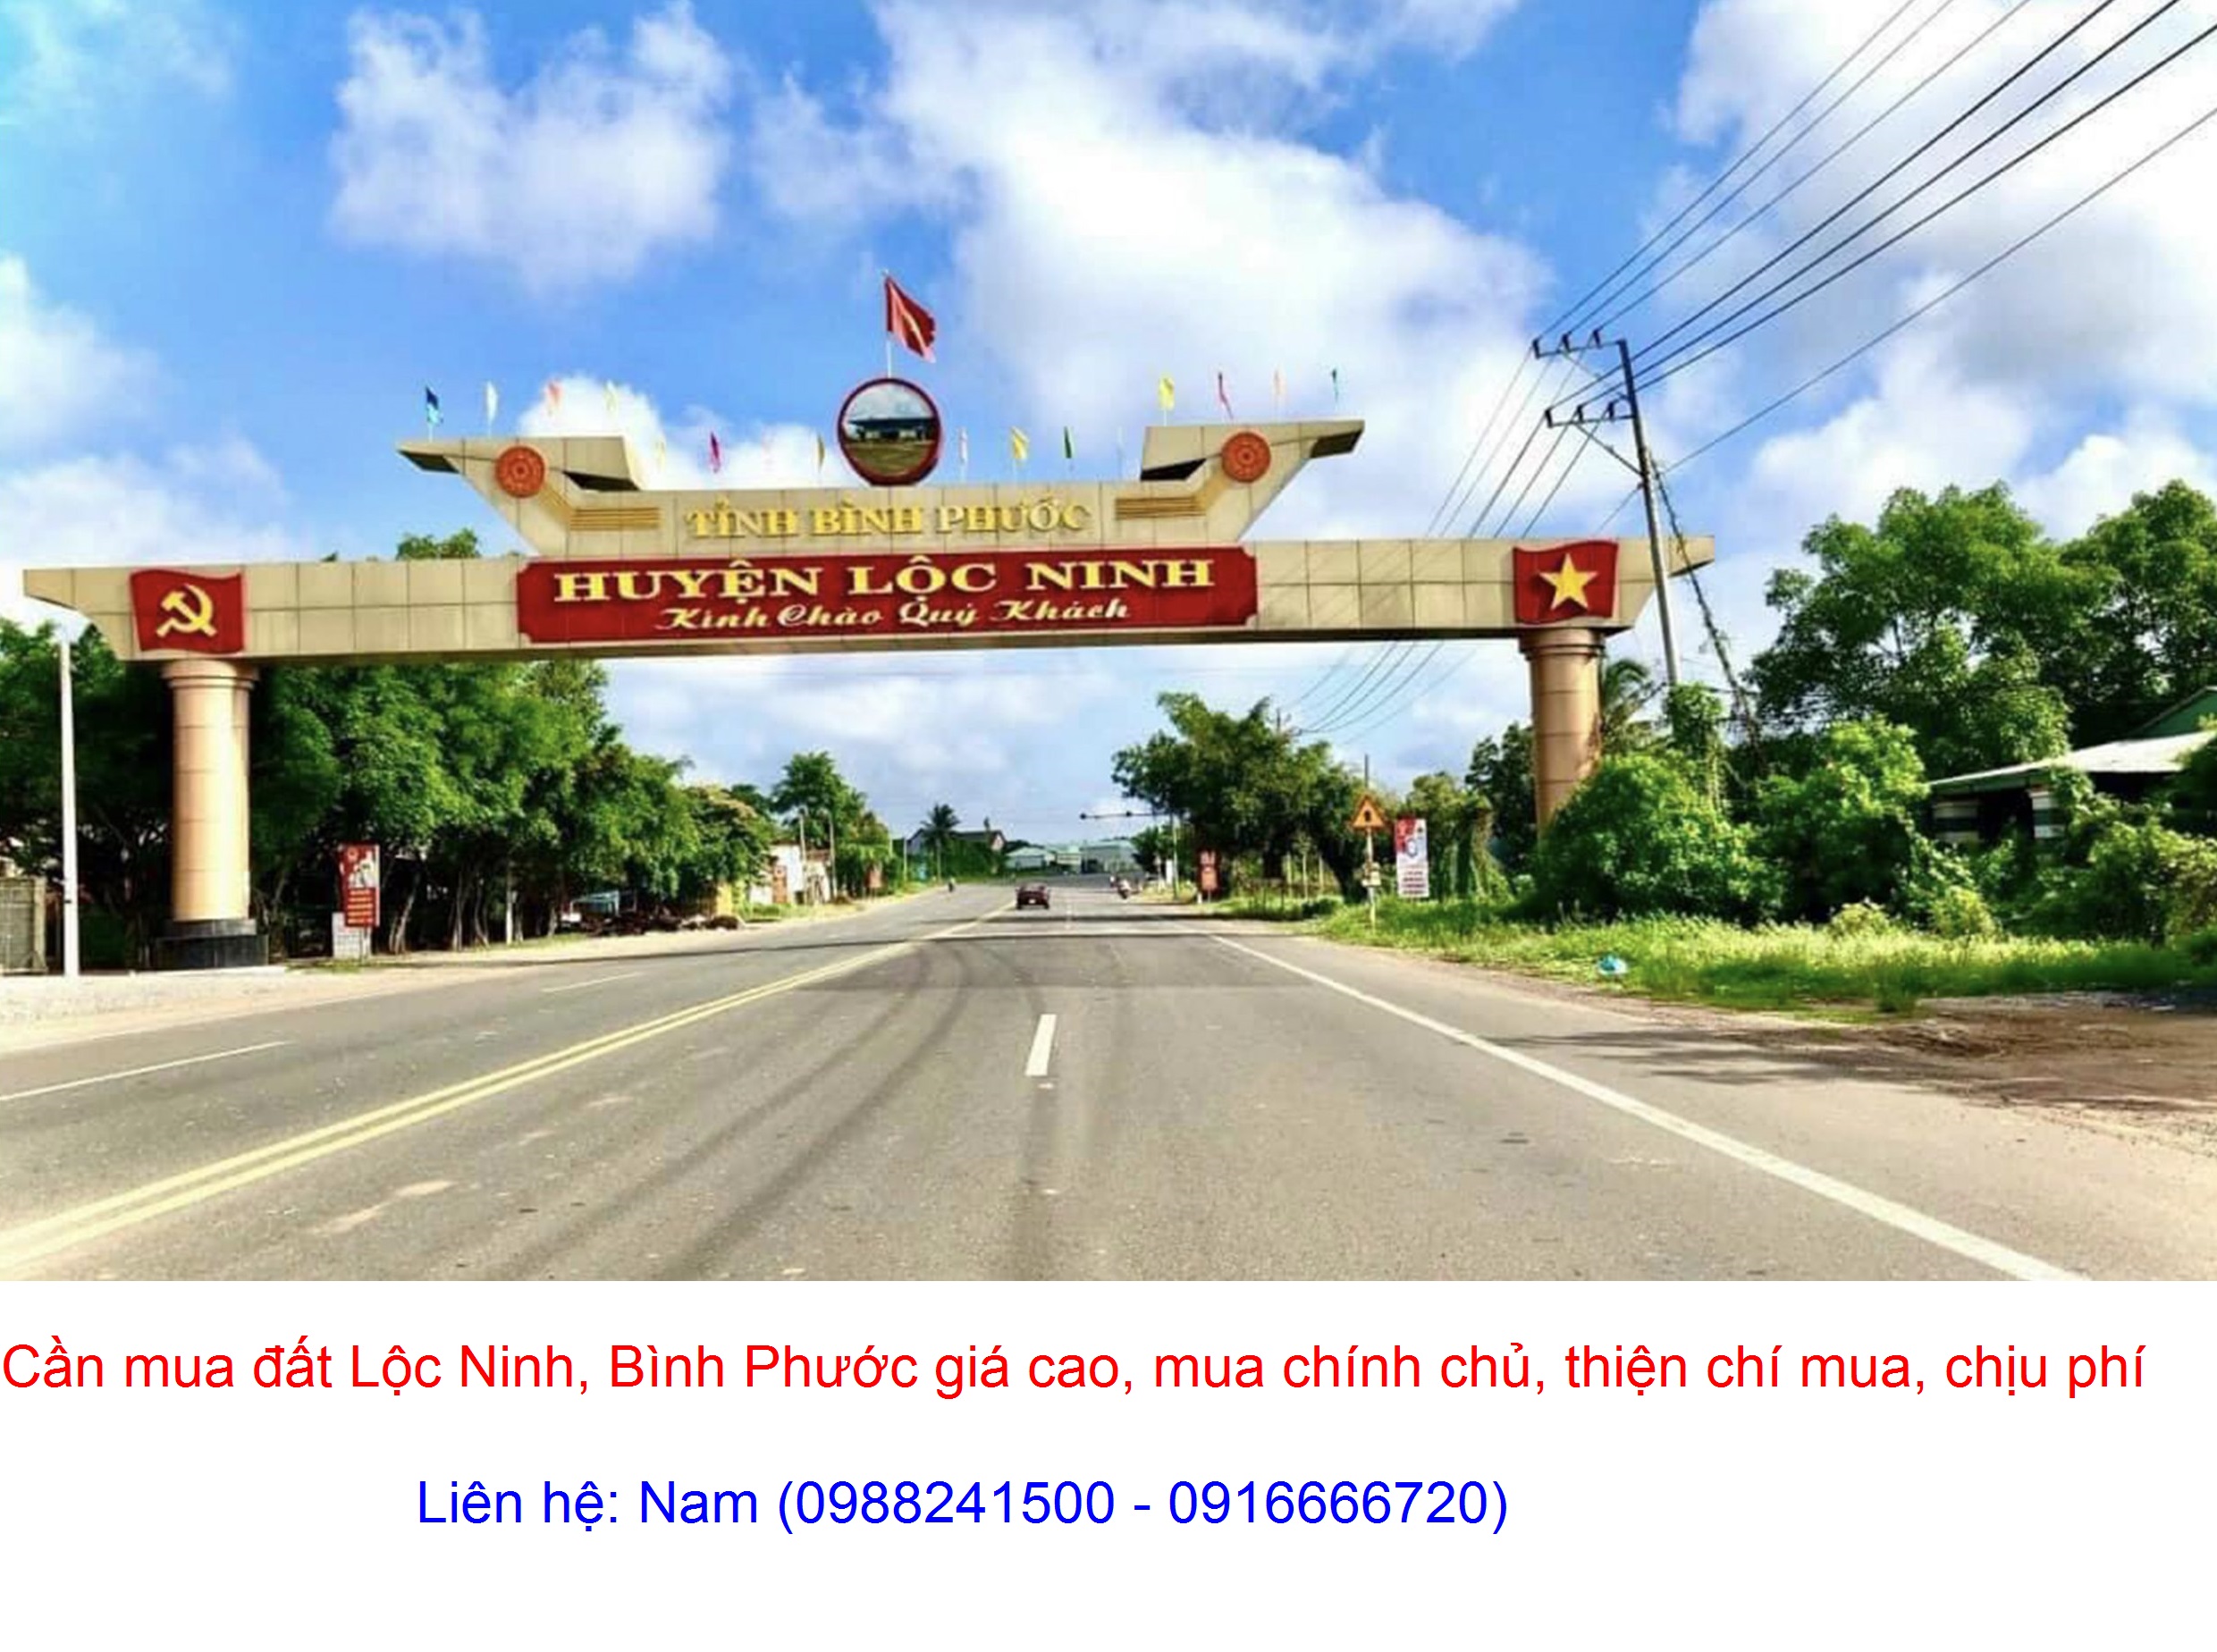 Cần Mua gấp đất Lộc Thuận, Lộc Ninh giá cao, mua chính chủ, thiện chí mua, chịu phí sang tên